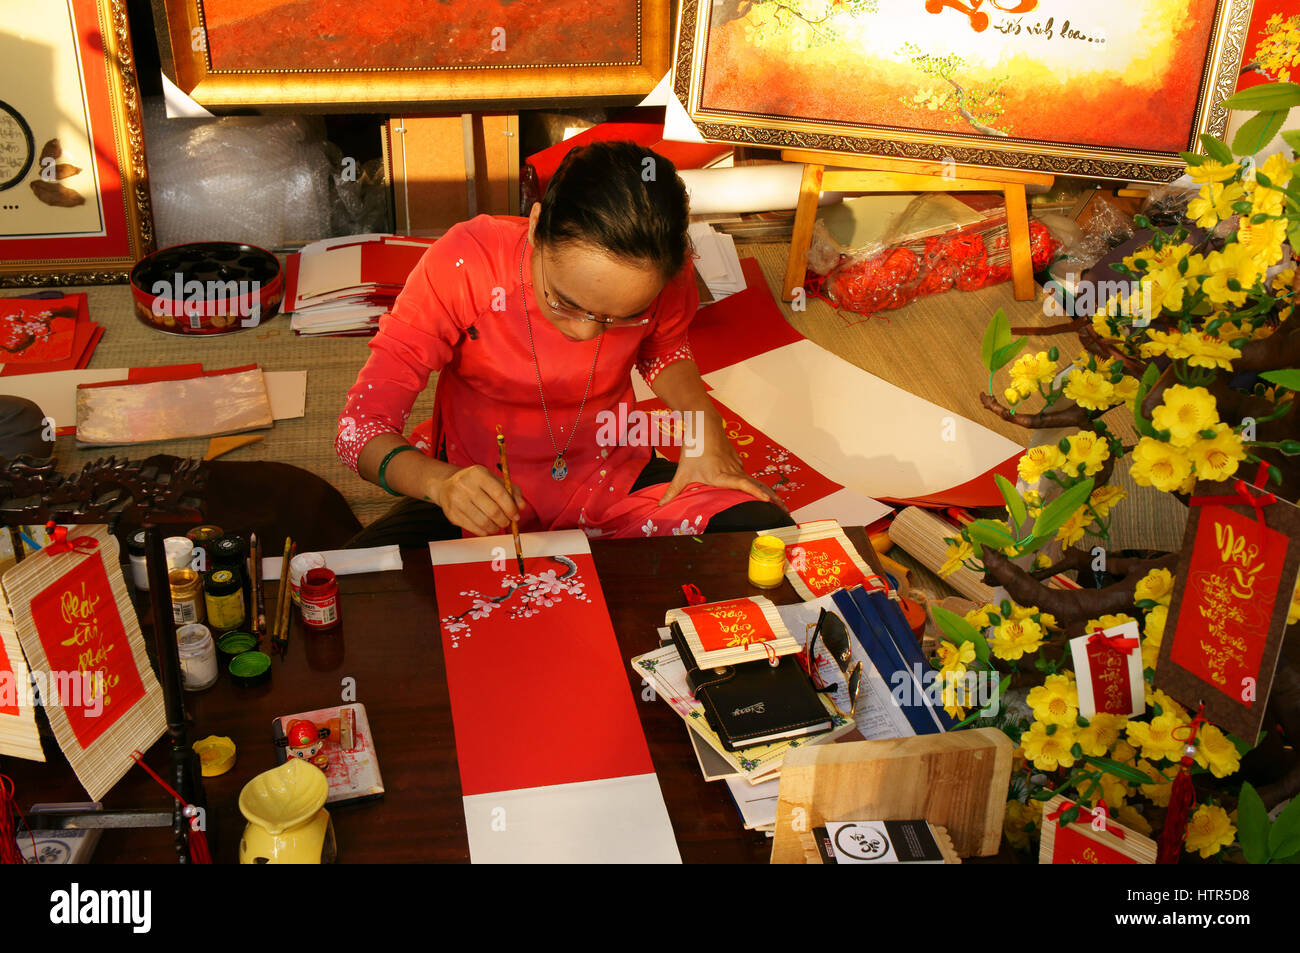 HO CHI MINH CITY, VIET NAM- FEB 7: atmosfera della primavera con colorati scena, donna vietnamita in ao dai, scrivere scrittura cinese o calligrafia Foto Stock